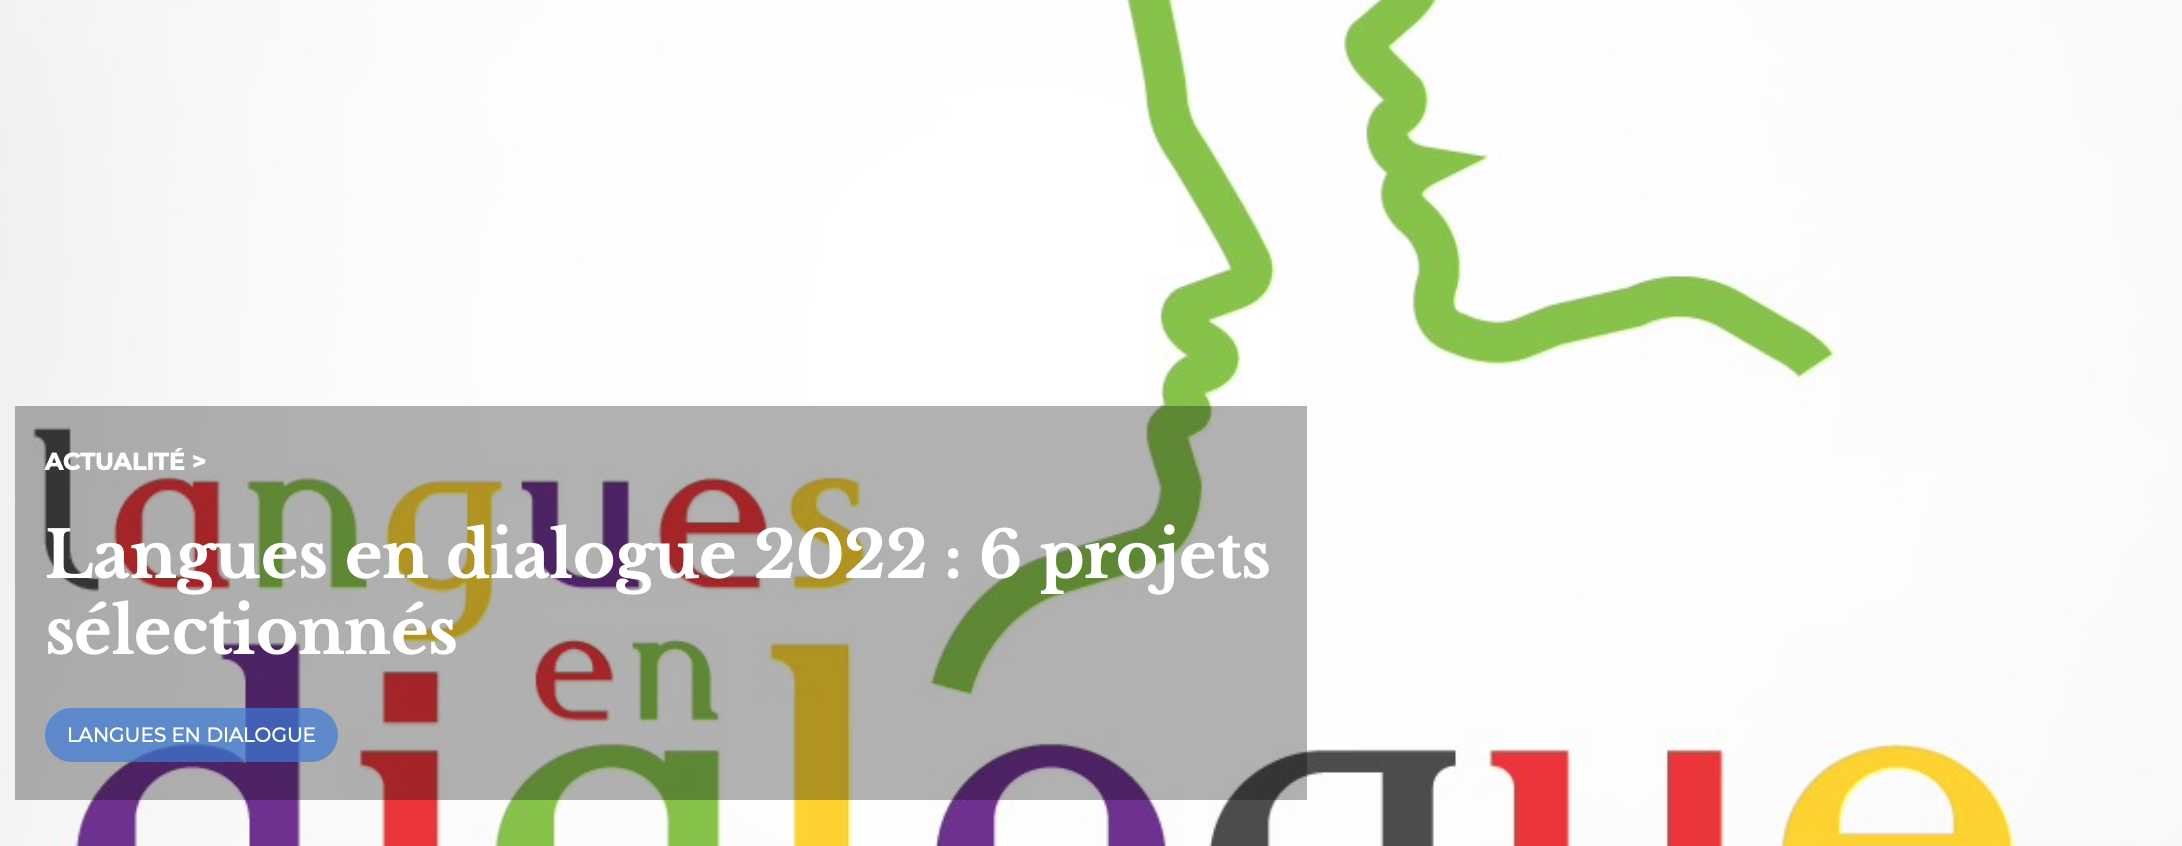 Langues en dialogue 2022 : l’OIF accompagnera les 6 projets sélectionnés